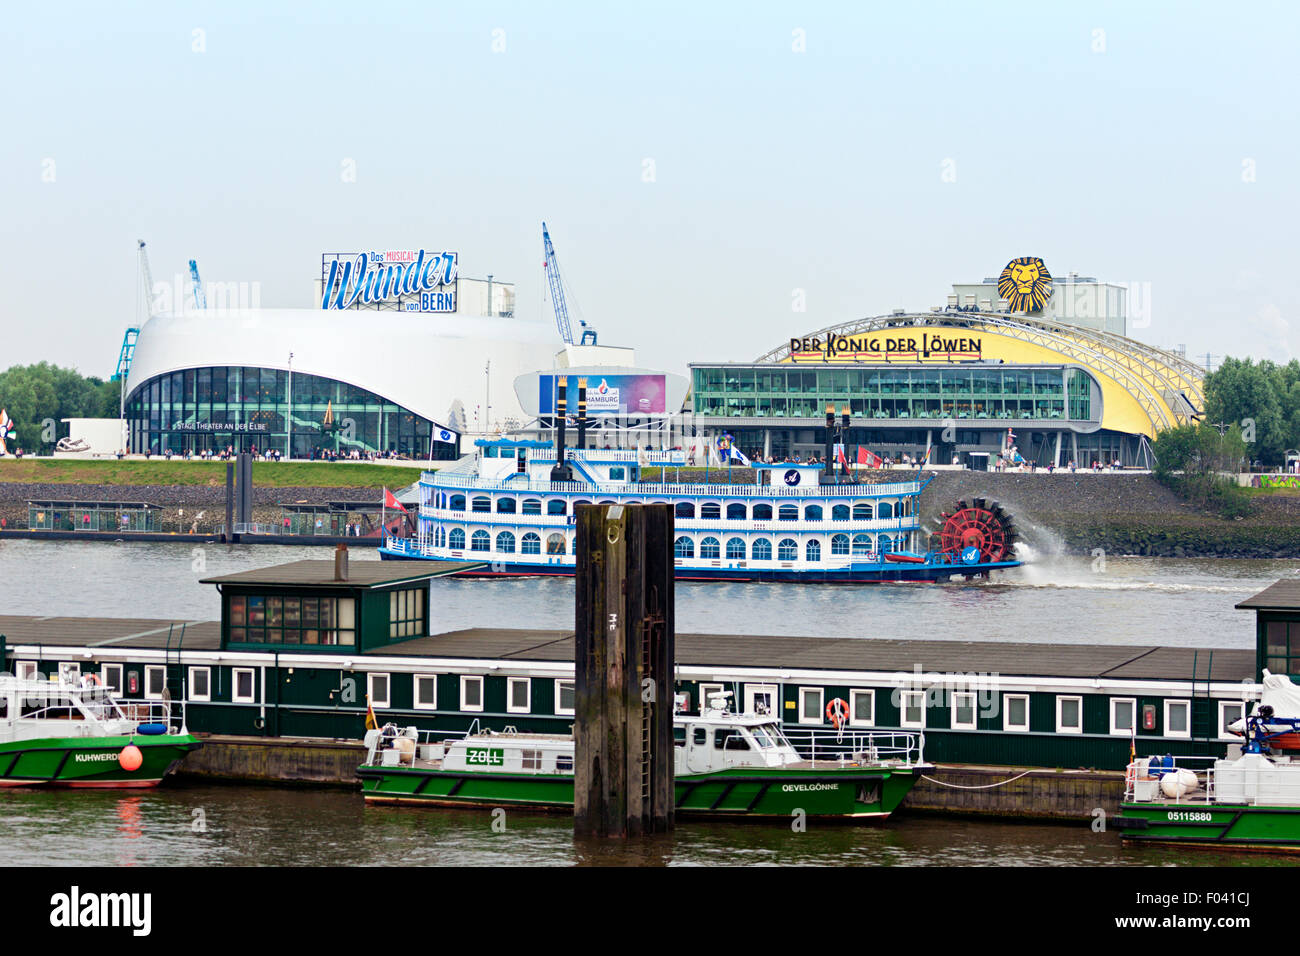 Paddler vapore passando dai due teatri musicali sul fiume Elba banche a Amburgo, jetty di dogana tedesca in primo piano Foto Stock